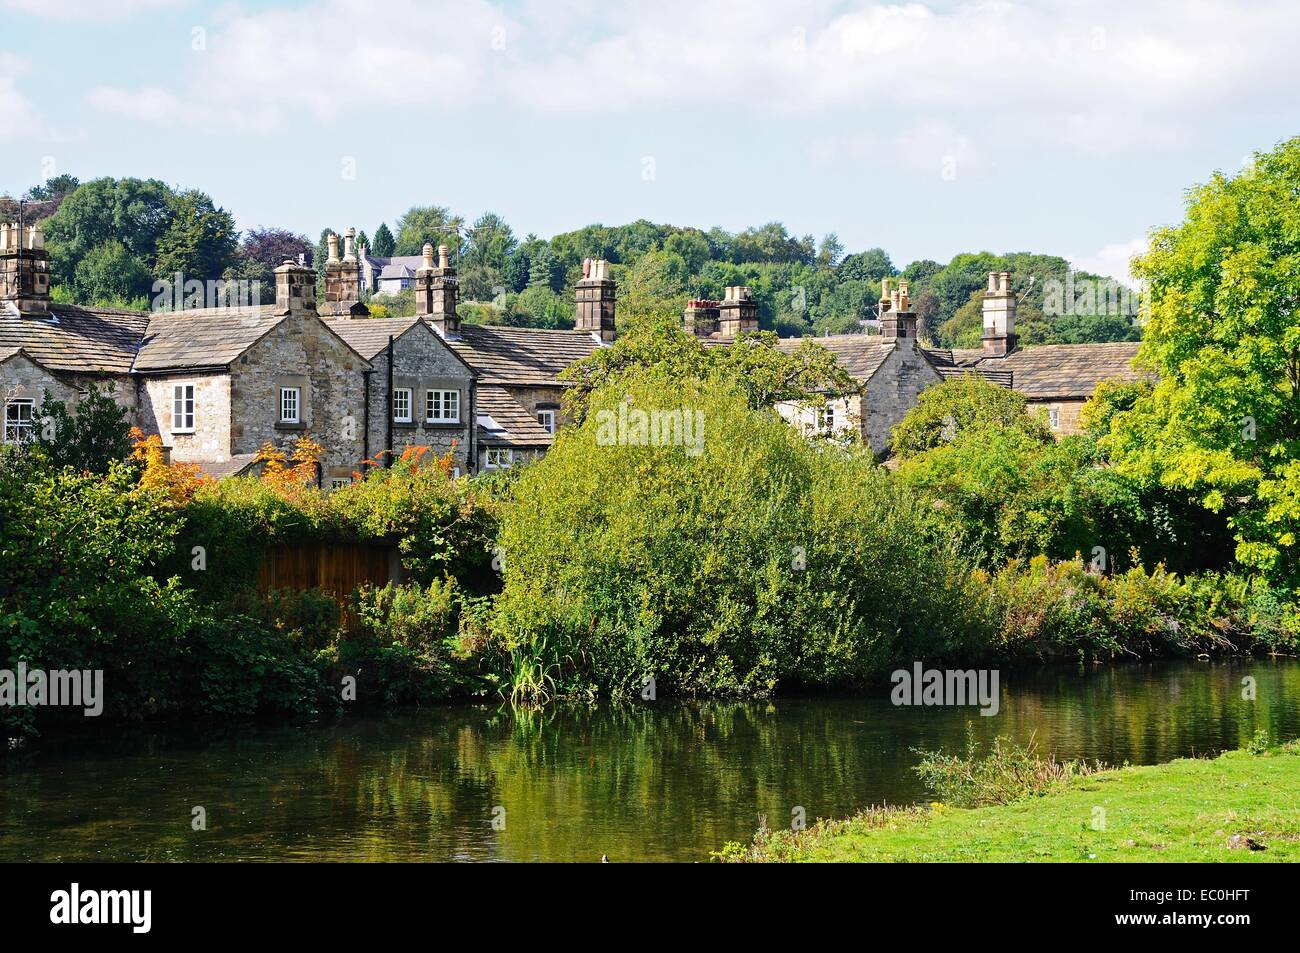 Chalets le long de la rivière Wye, Bakewell, Derbyshire, Angleterre, Royaume-Uni, Europe de l'Ouest. Banque D'Images